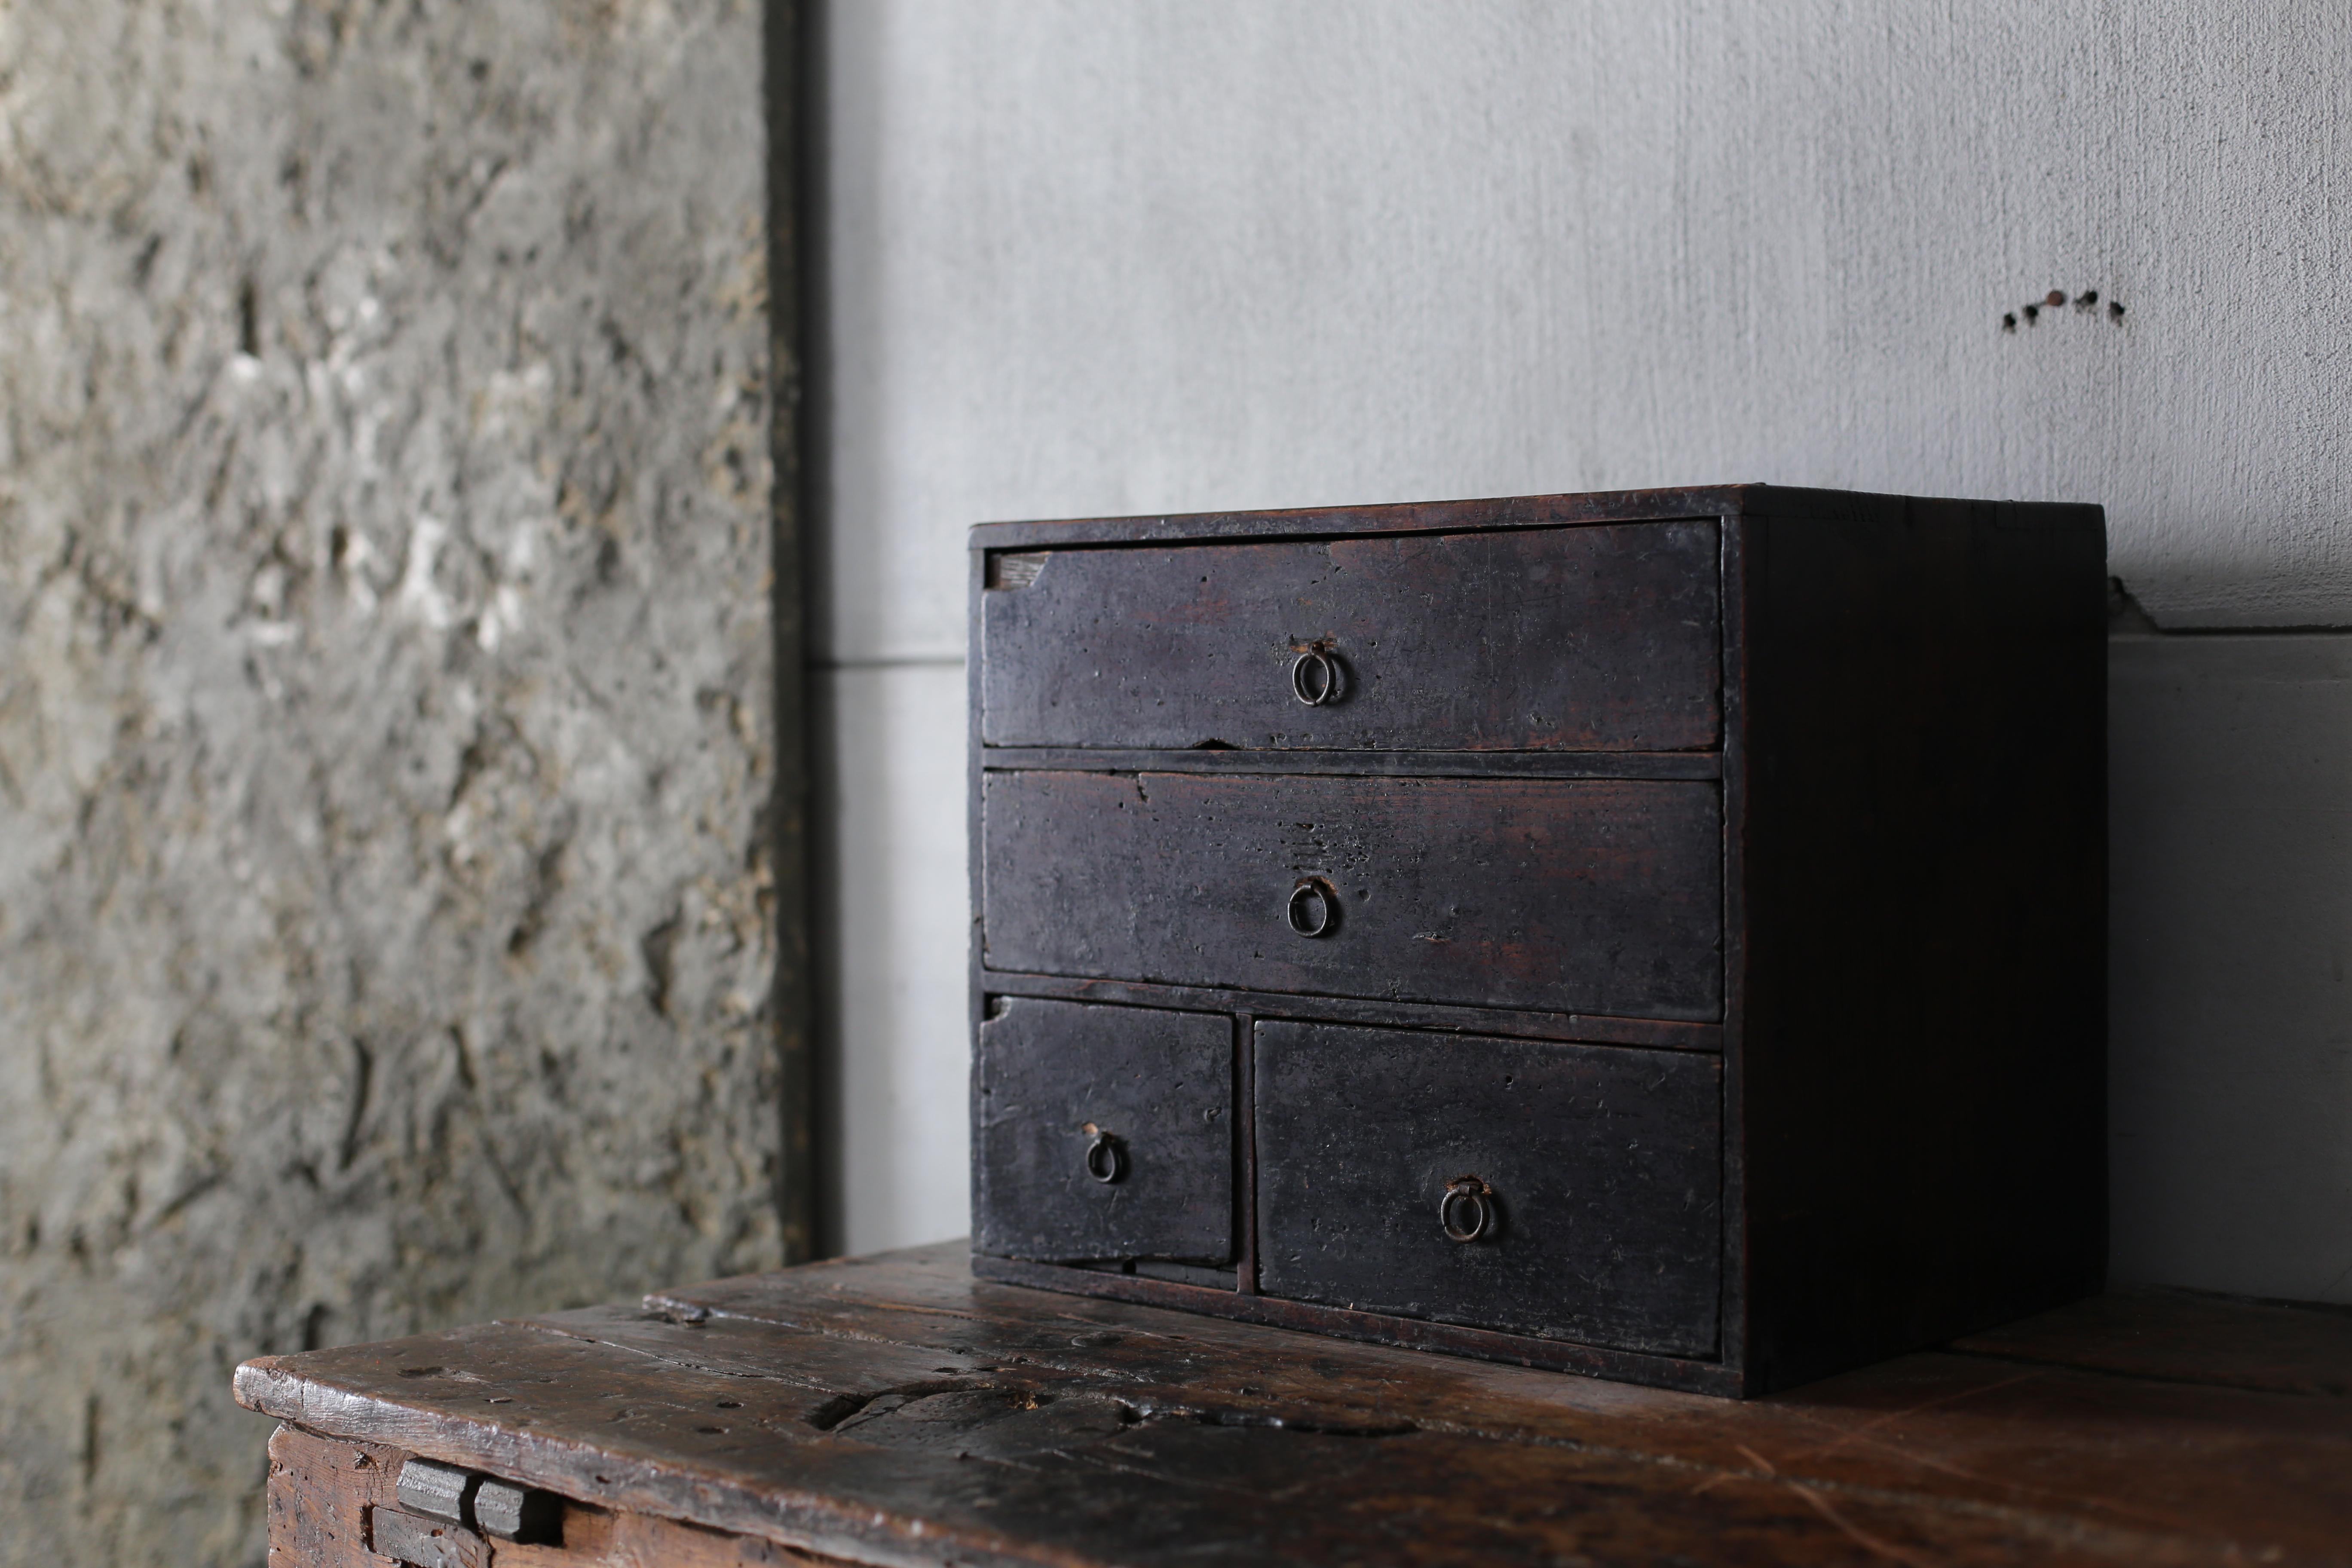 Très ancien petit tiroir japonais.
Ces meubles datent de la période Meiji (1860-1900).
Il est fabriqué en bois de cèdre.
Les poignées rondes sont en fer.

Ces tiroirs sont de bon goût, rustiques, simples et beaux.
Il n'y a pas de déchets dans la